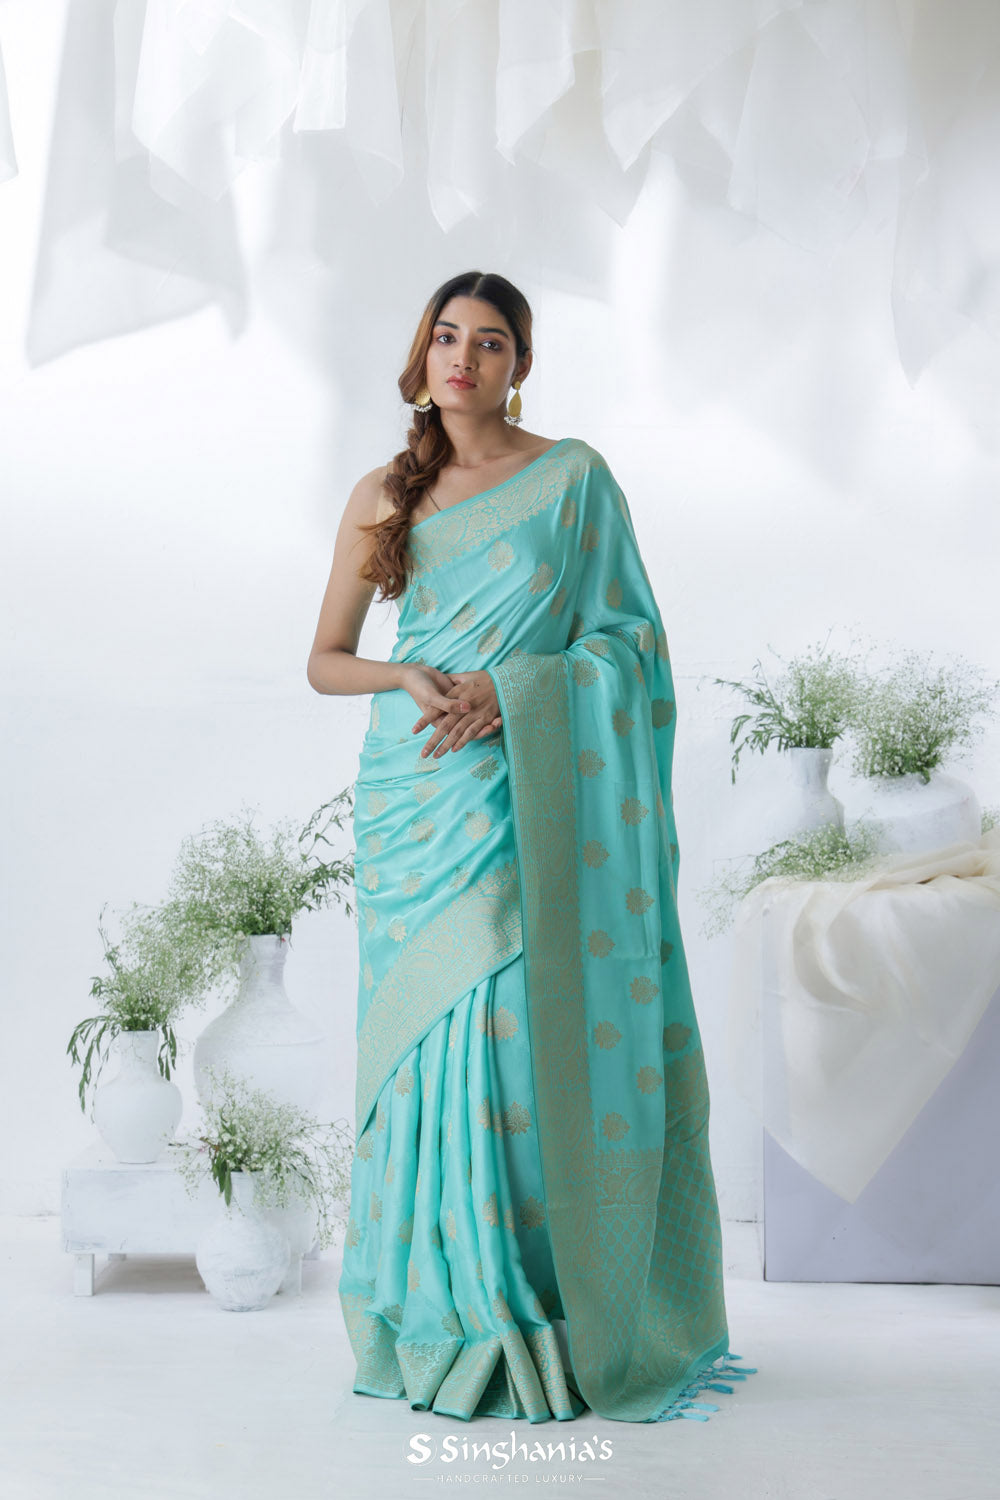 Electric Blue Banarasi Mashru Silk Saree With Floral Motifs